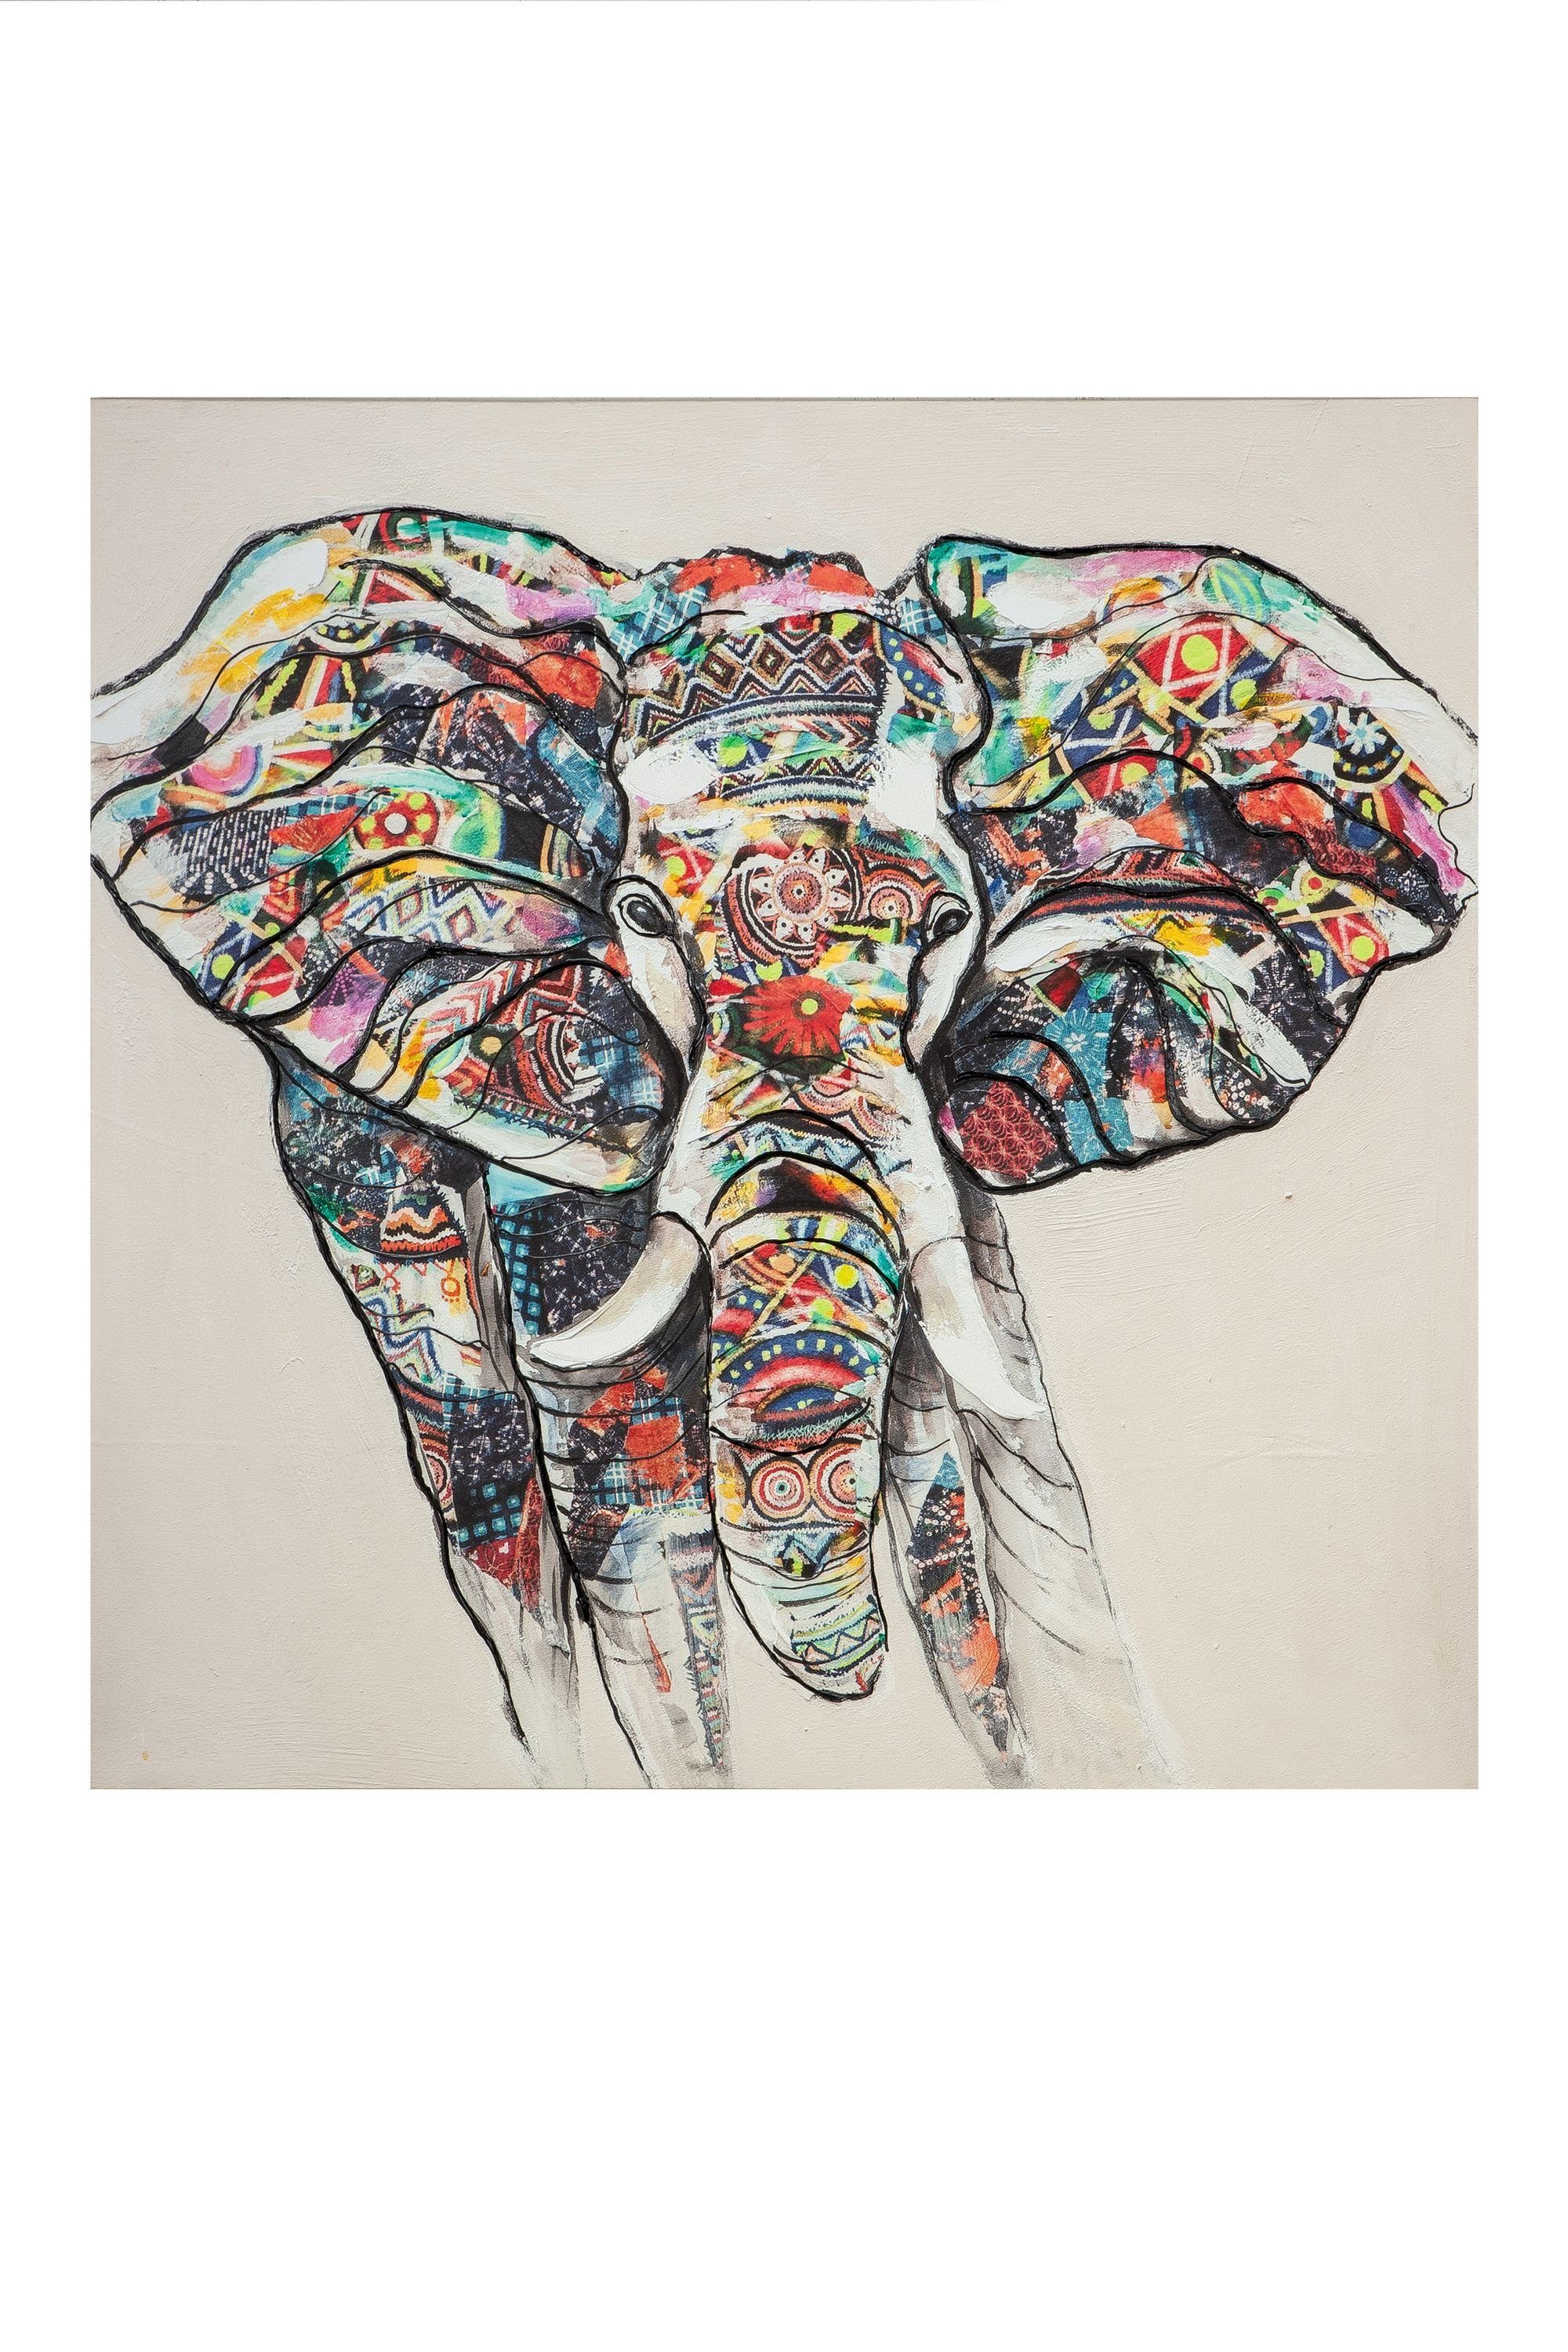 GILDE Bild GILDE Bild Bunter Elefant - mehrfarbig - H. 100cm x B. 100cm